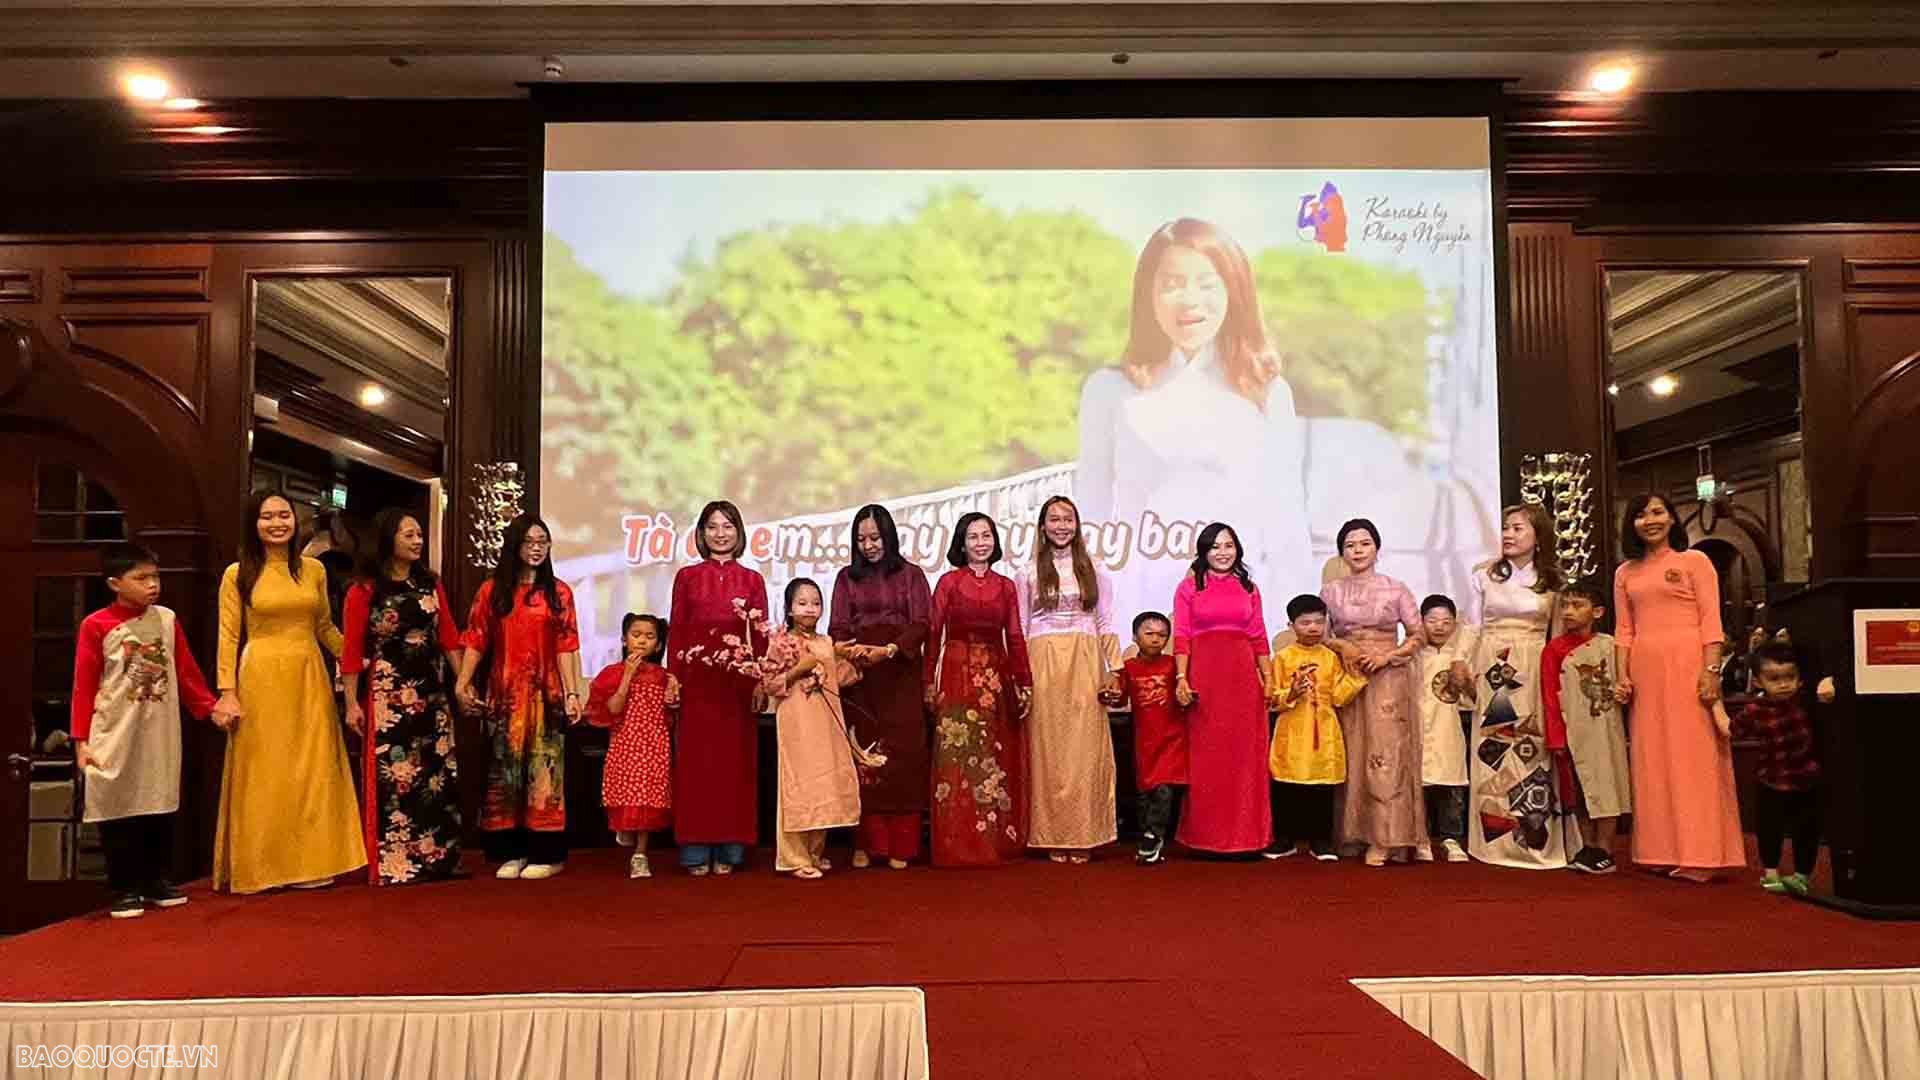 Kiều bào trình diễn áo dài truyền thống Việt Nam trong chương trình “Duyên dáng áo dài người Việt tại UAE”.